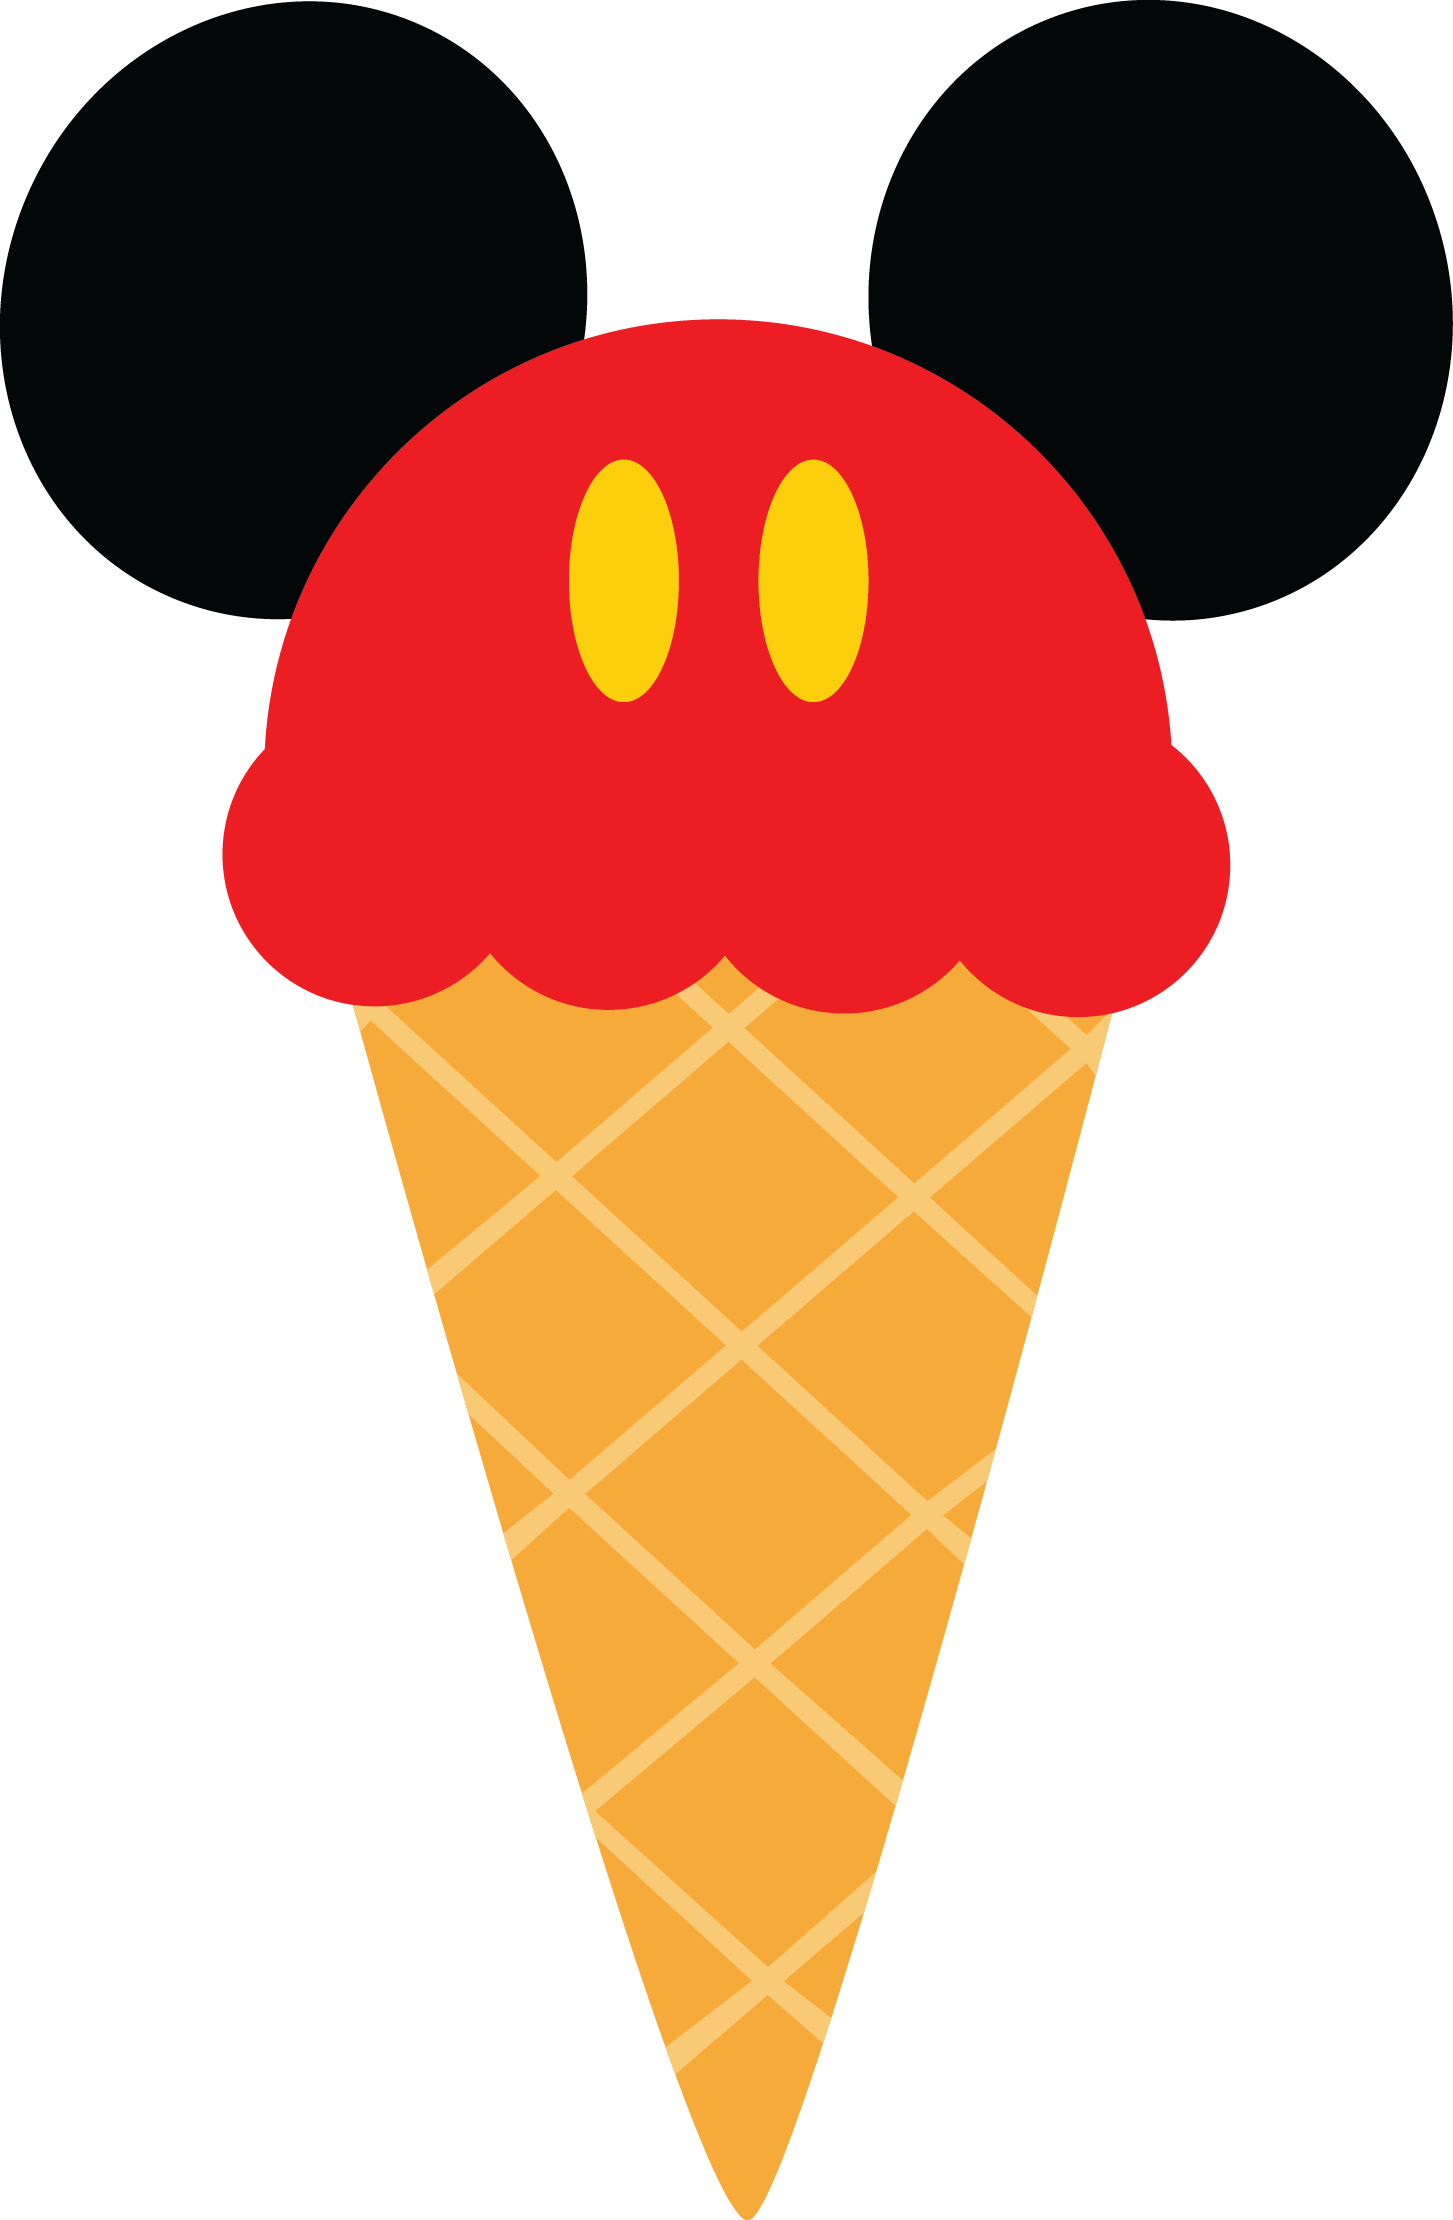 High Quality Mickey mouse logo cone cono con calzones rojos Blank Meme Template